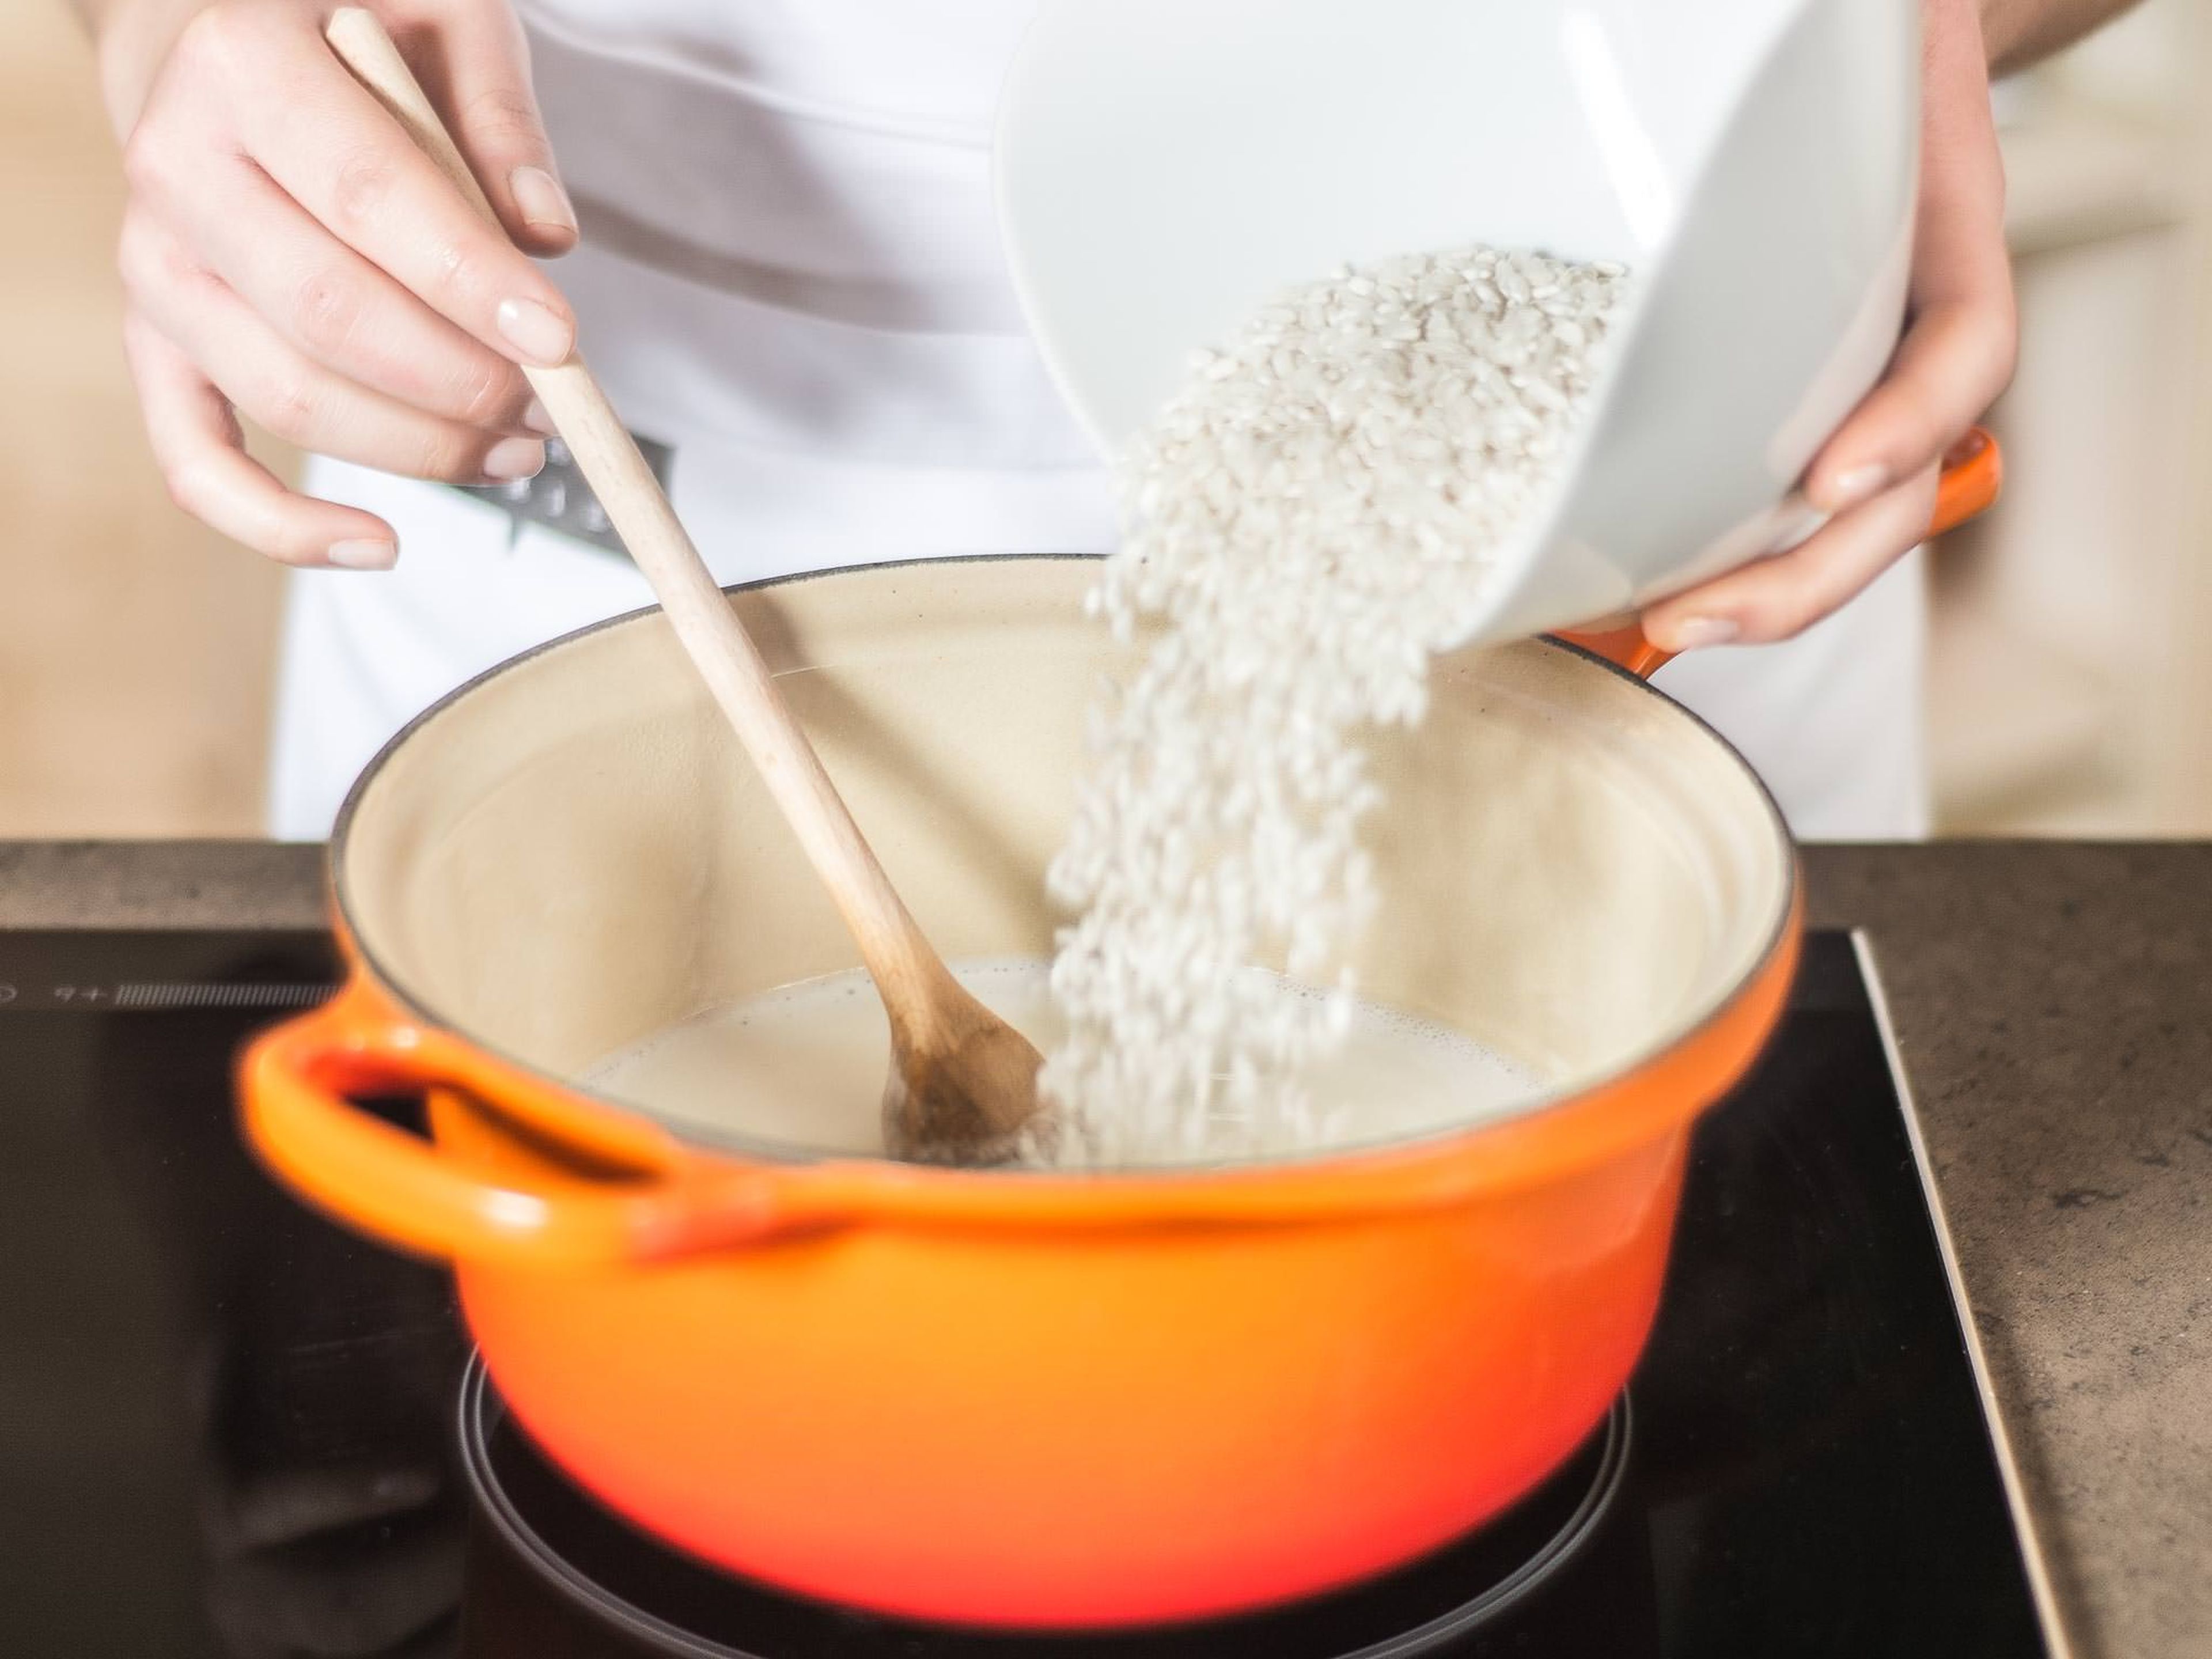 Reismilch aufkochen lassen. Milchreis und Mark der halben Vanilleschote hinzugeben. Ca. 30 Min. unter gelegentlichem Rühren köcheln lassen. Fertigen Milchreis und Kompott warm mit einer Prise Zimt servieren.